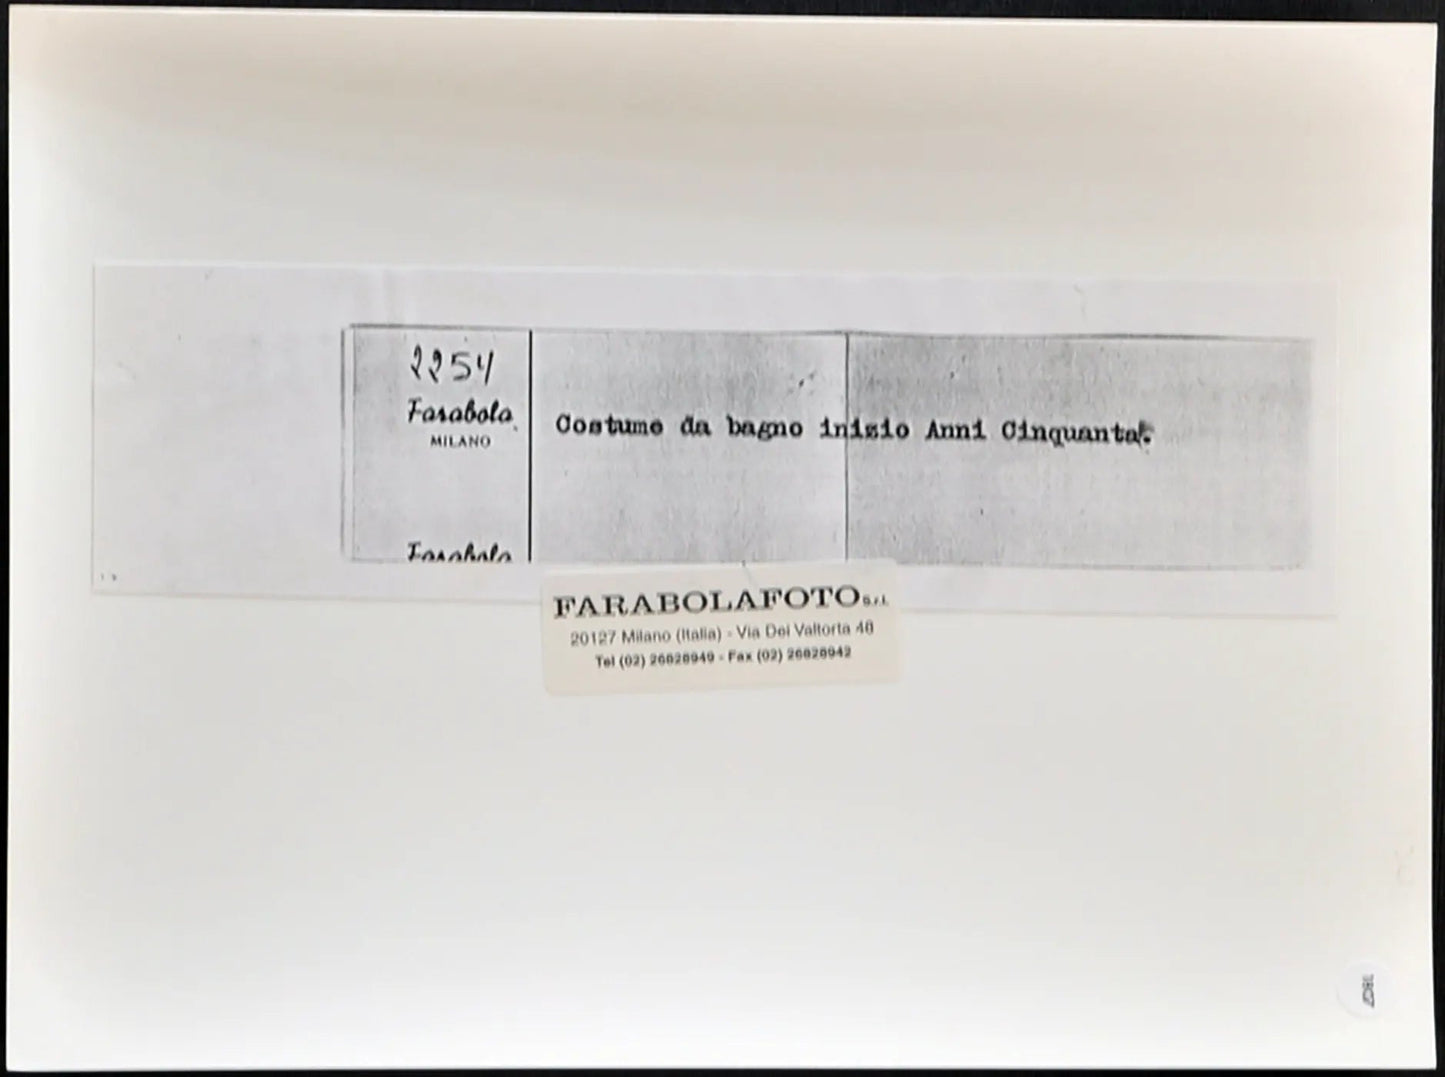 Costumi da bagno anni 50 Ft 1807 - Stampa 24x18 cm - Farabola Stampa ai sali d'argento